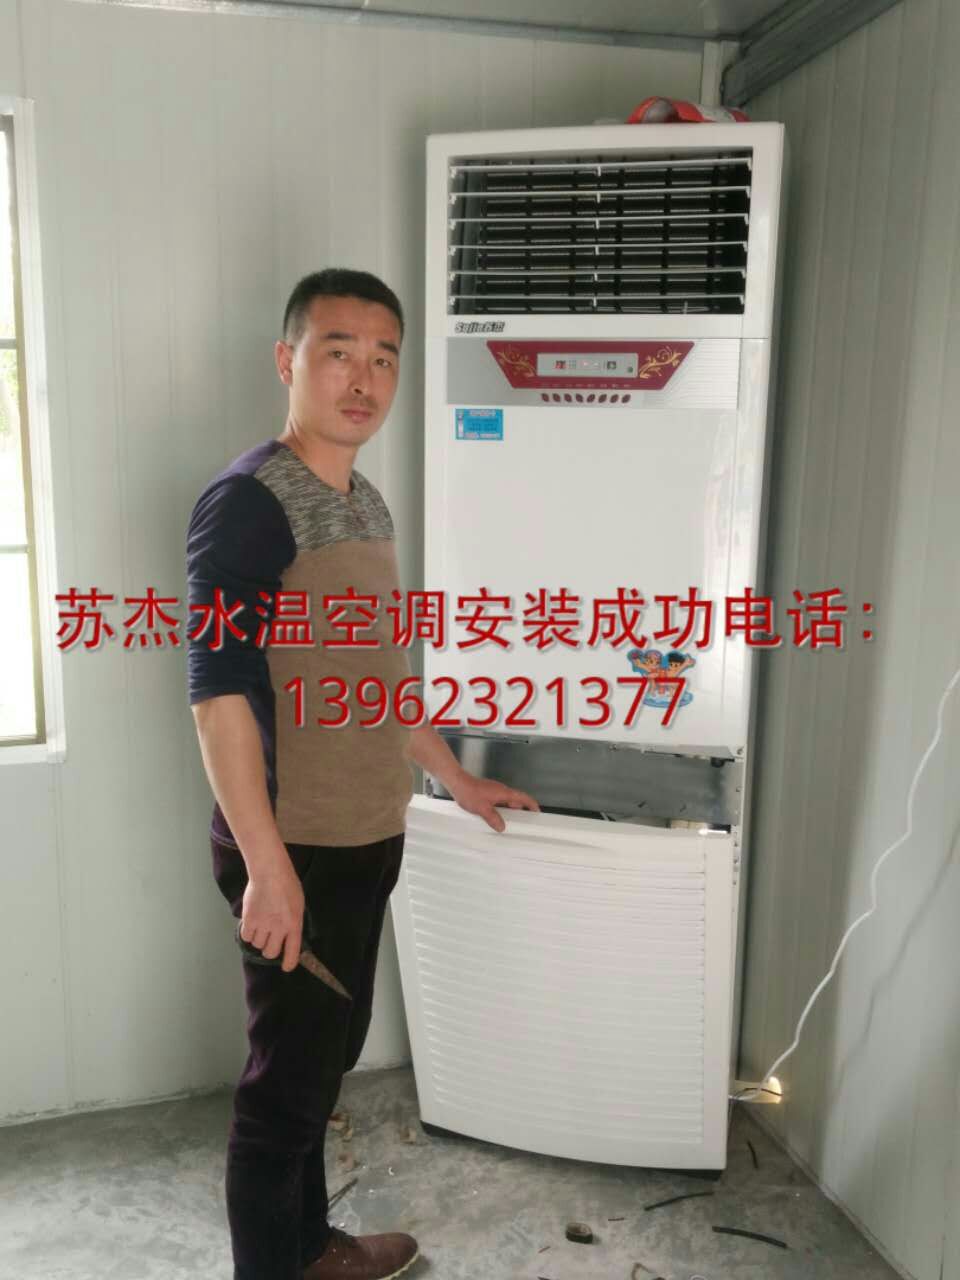 供应苏州环保空调安装销售苏州水空调/苏州水空调厂家三年保修